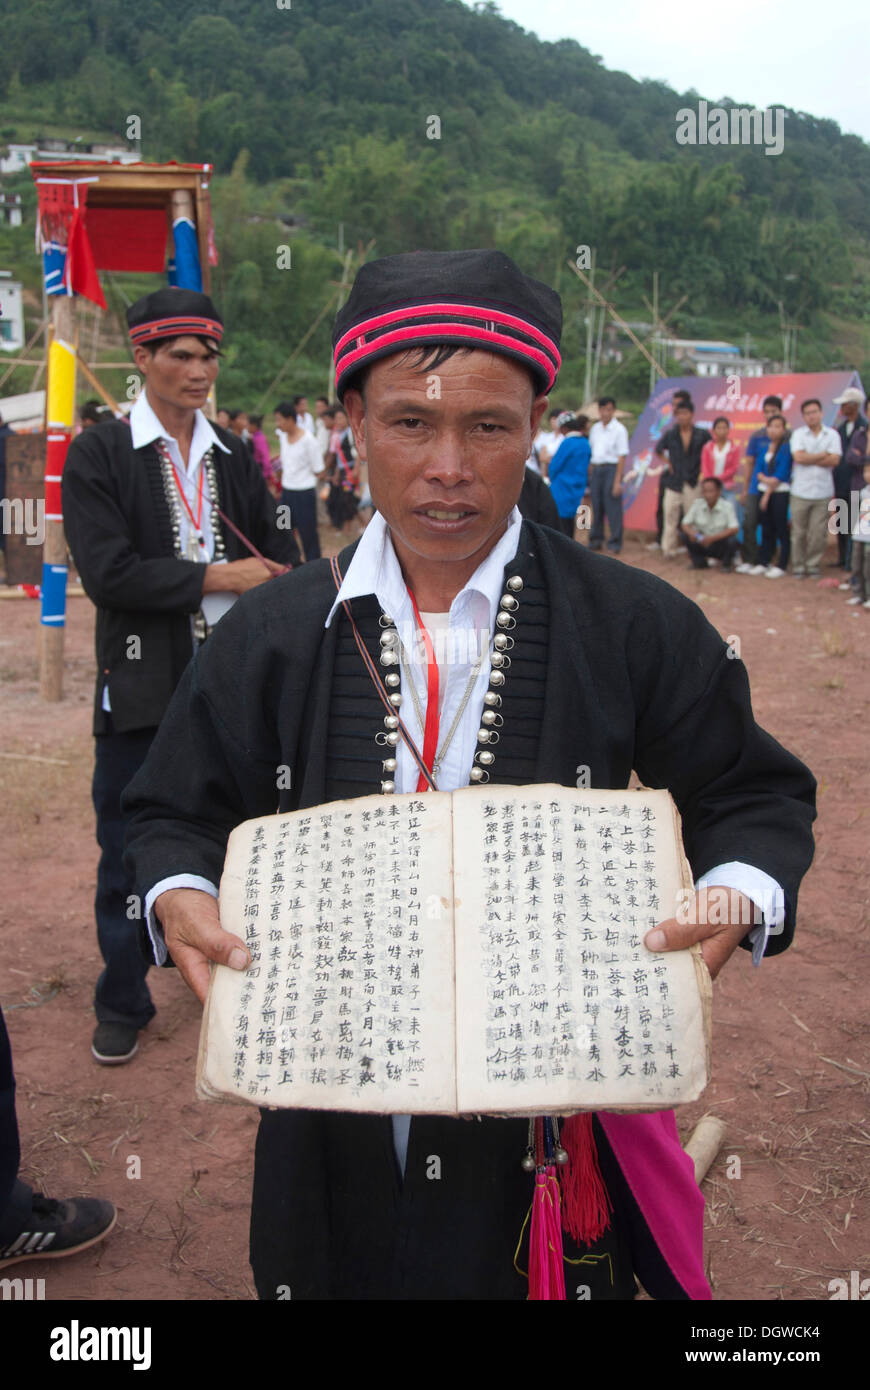 Festival ethnique, l'homme de la minorité Yao en costume traditionnel Présentation de livre et écrit, Golden Dome International, la ville de Pu'er Banque D'Images